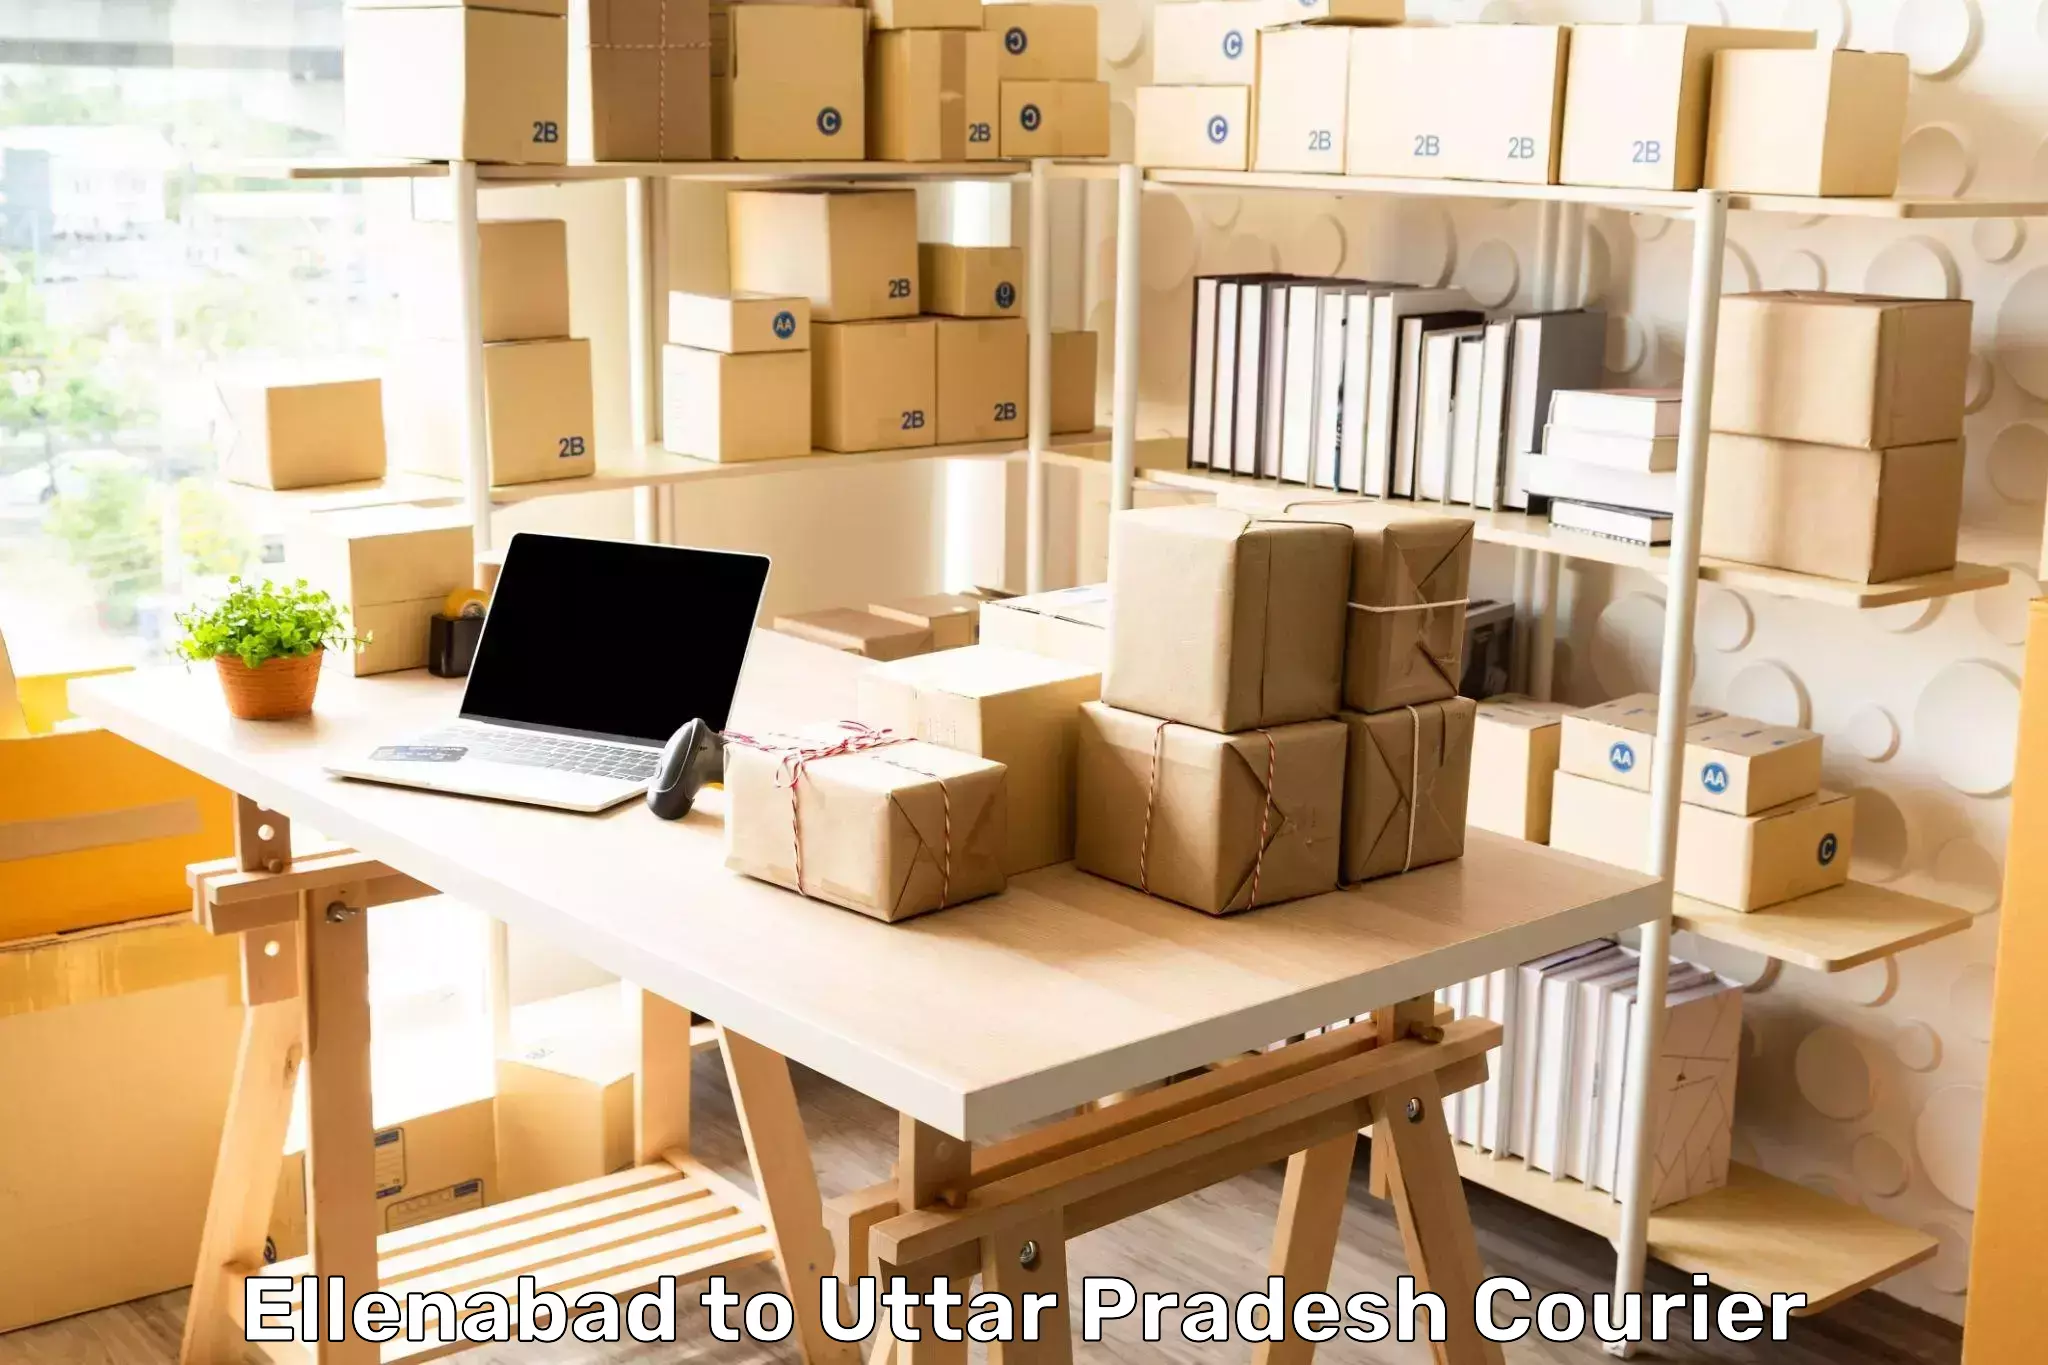 Package forwarding Ellenabad to Uttar Pradesh